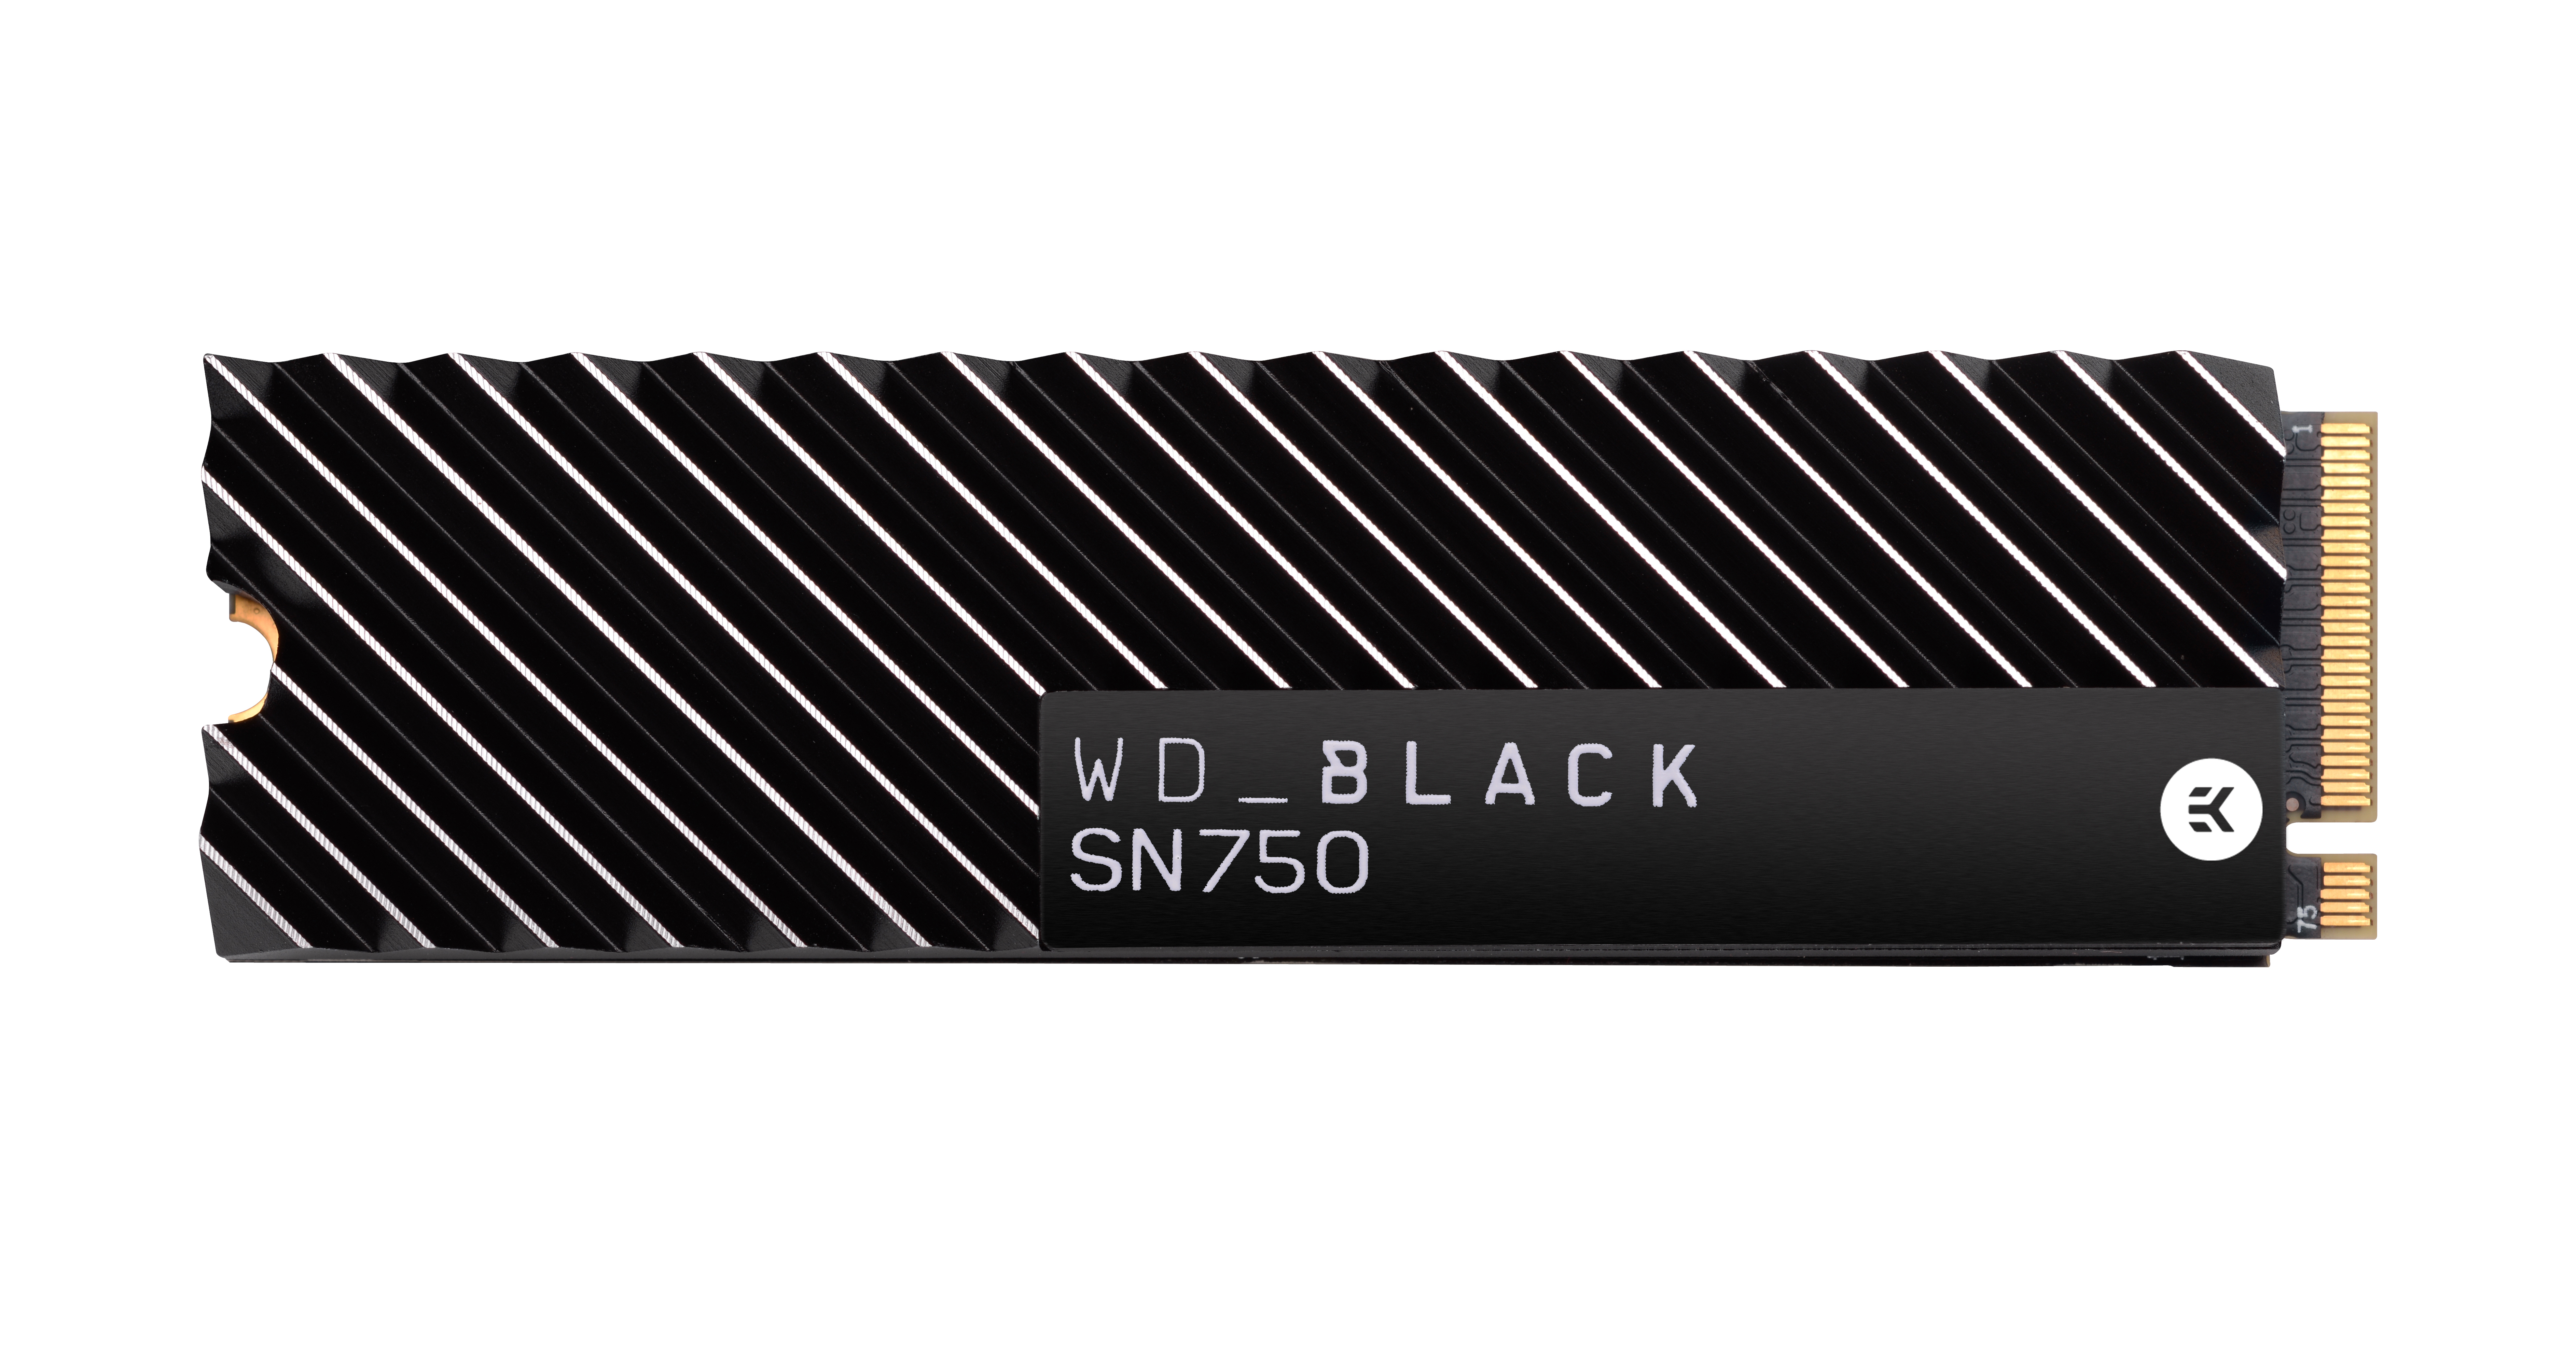 Speicher, 2 intern Speicher SN750 M.2 TB Interner NVMe, via WD_BLACK SSD, NVMe™